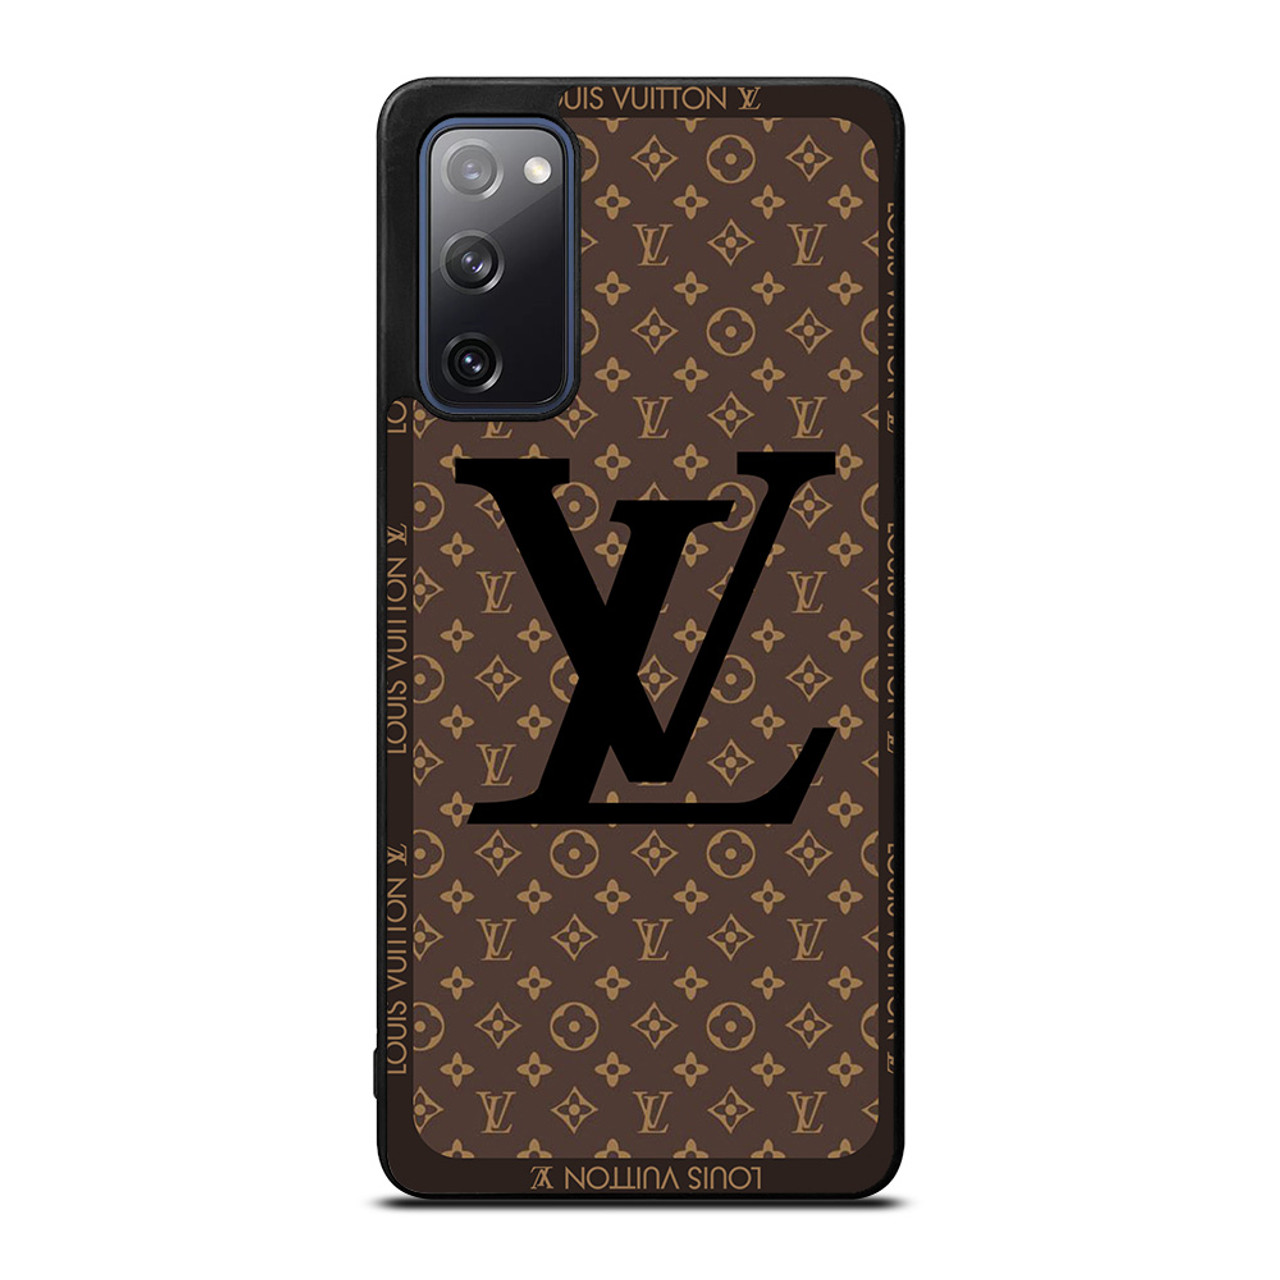 Case for Samsung Galaxy S20 FE: Louis Vuitton logo